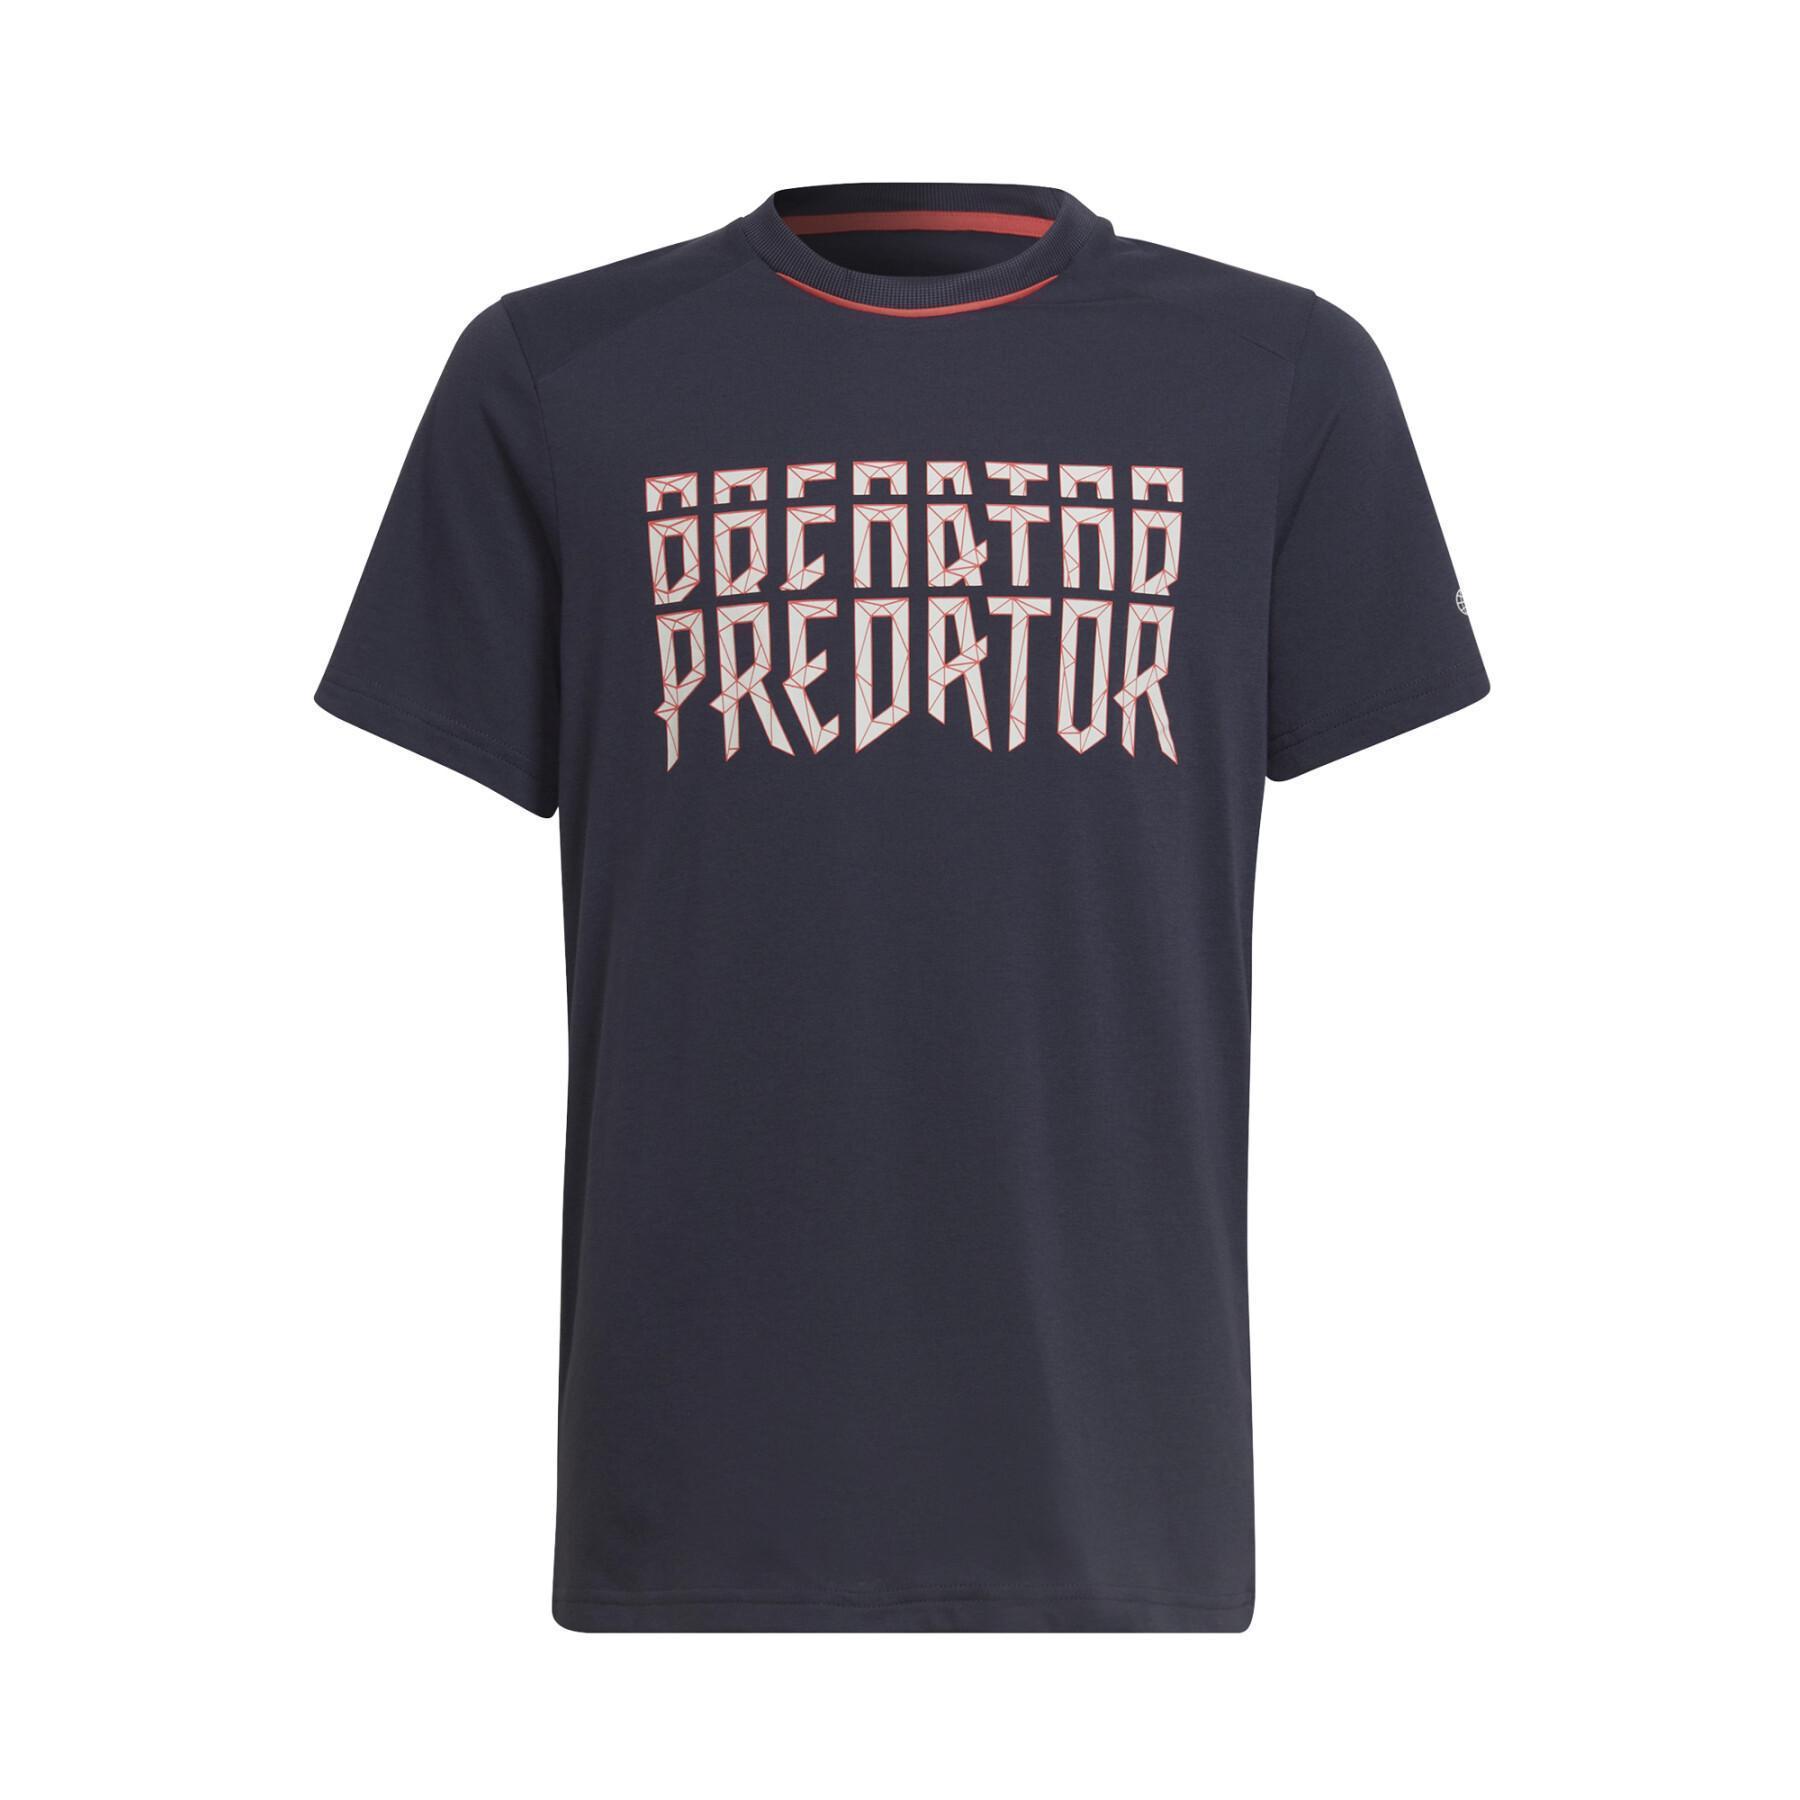 Child's T-shirt adidas Predator